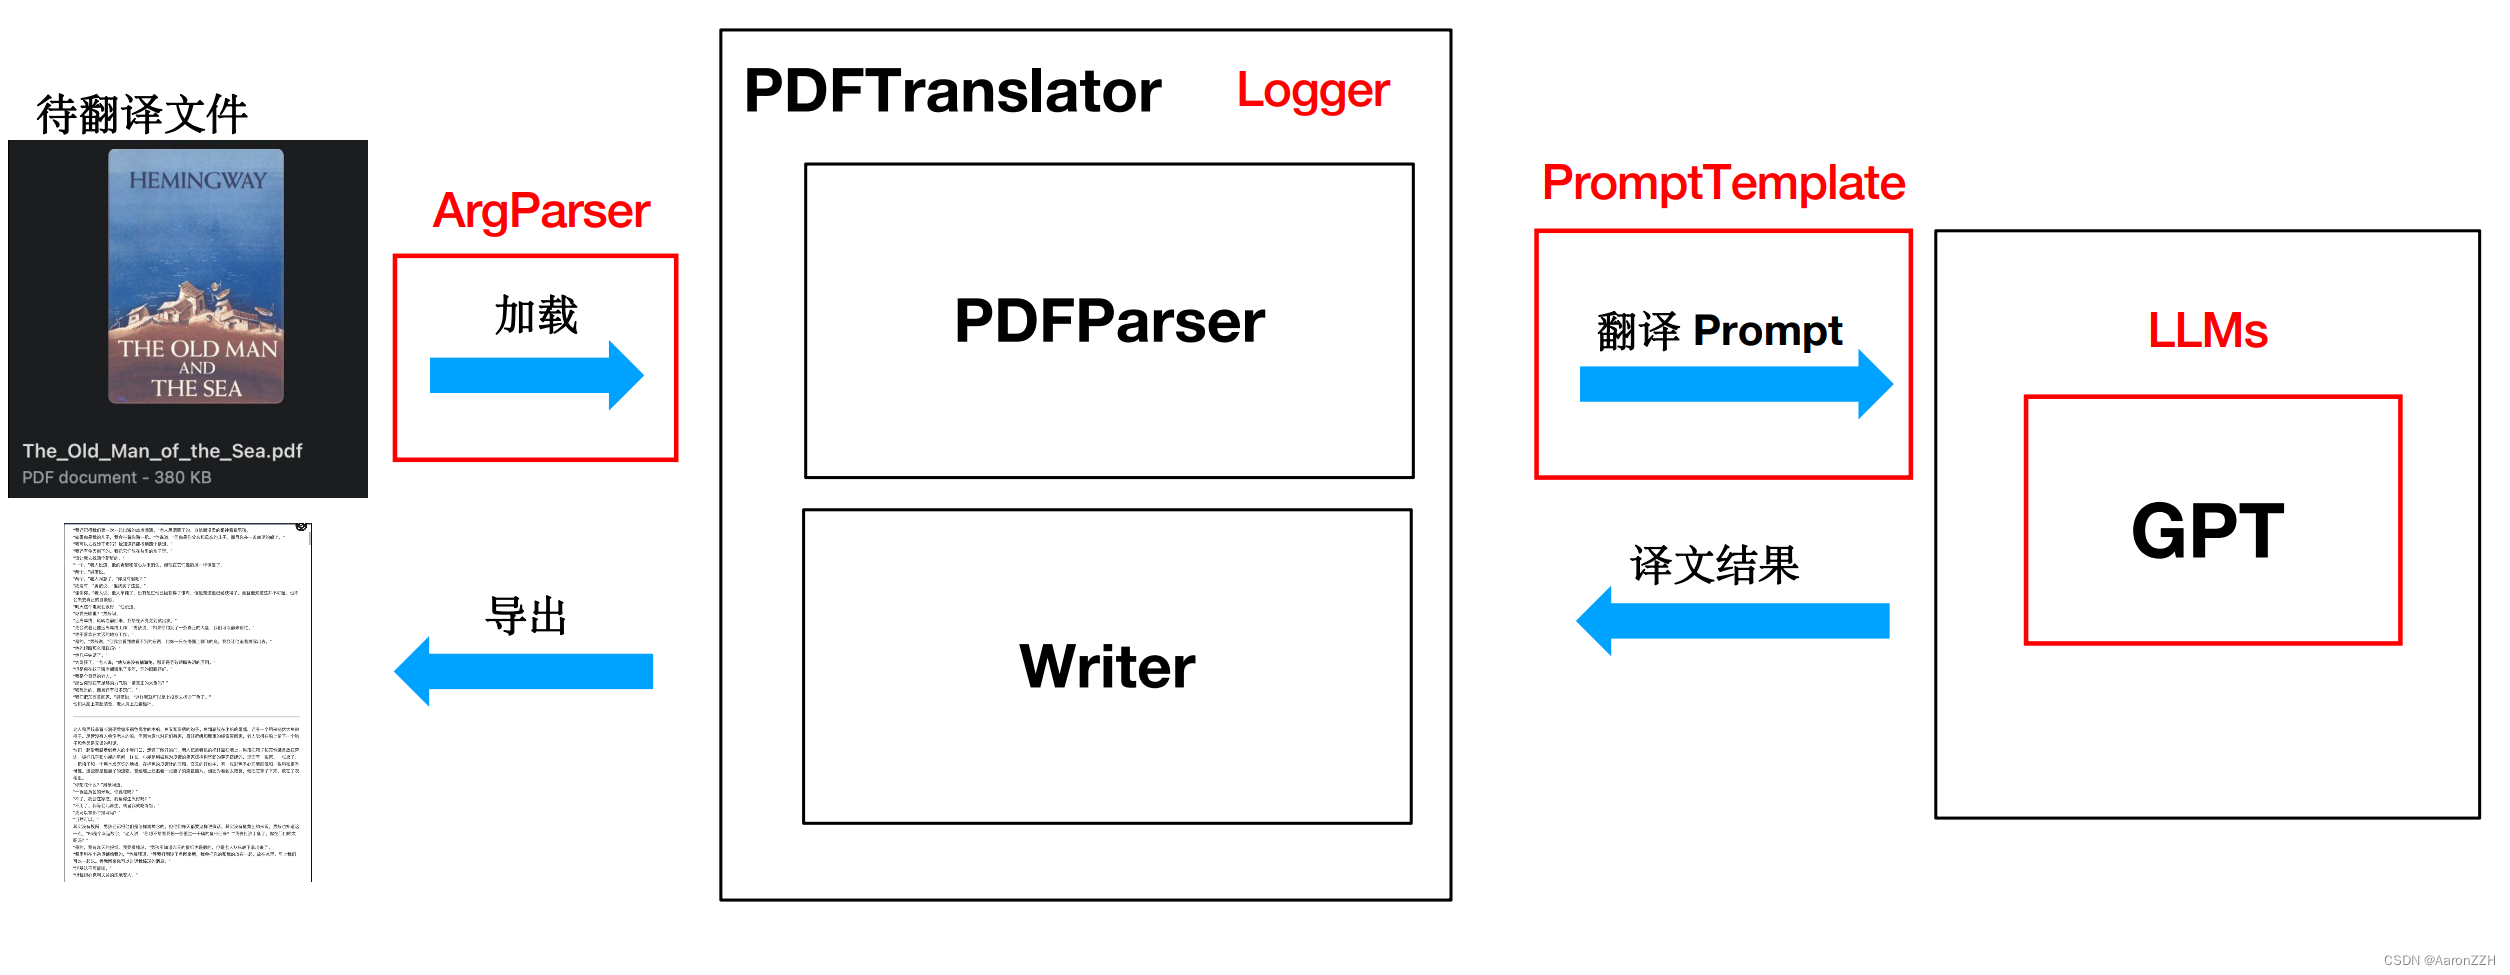 大模型开发05：PDF 翻译工具开发实战